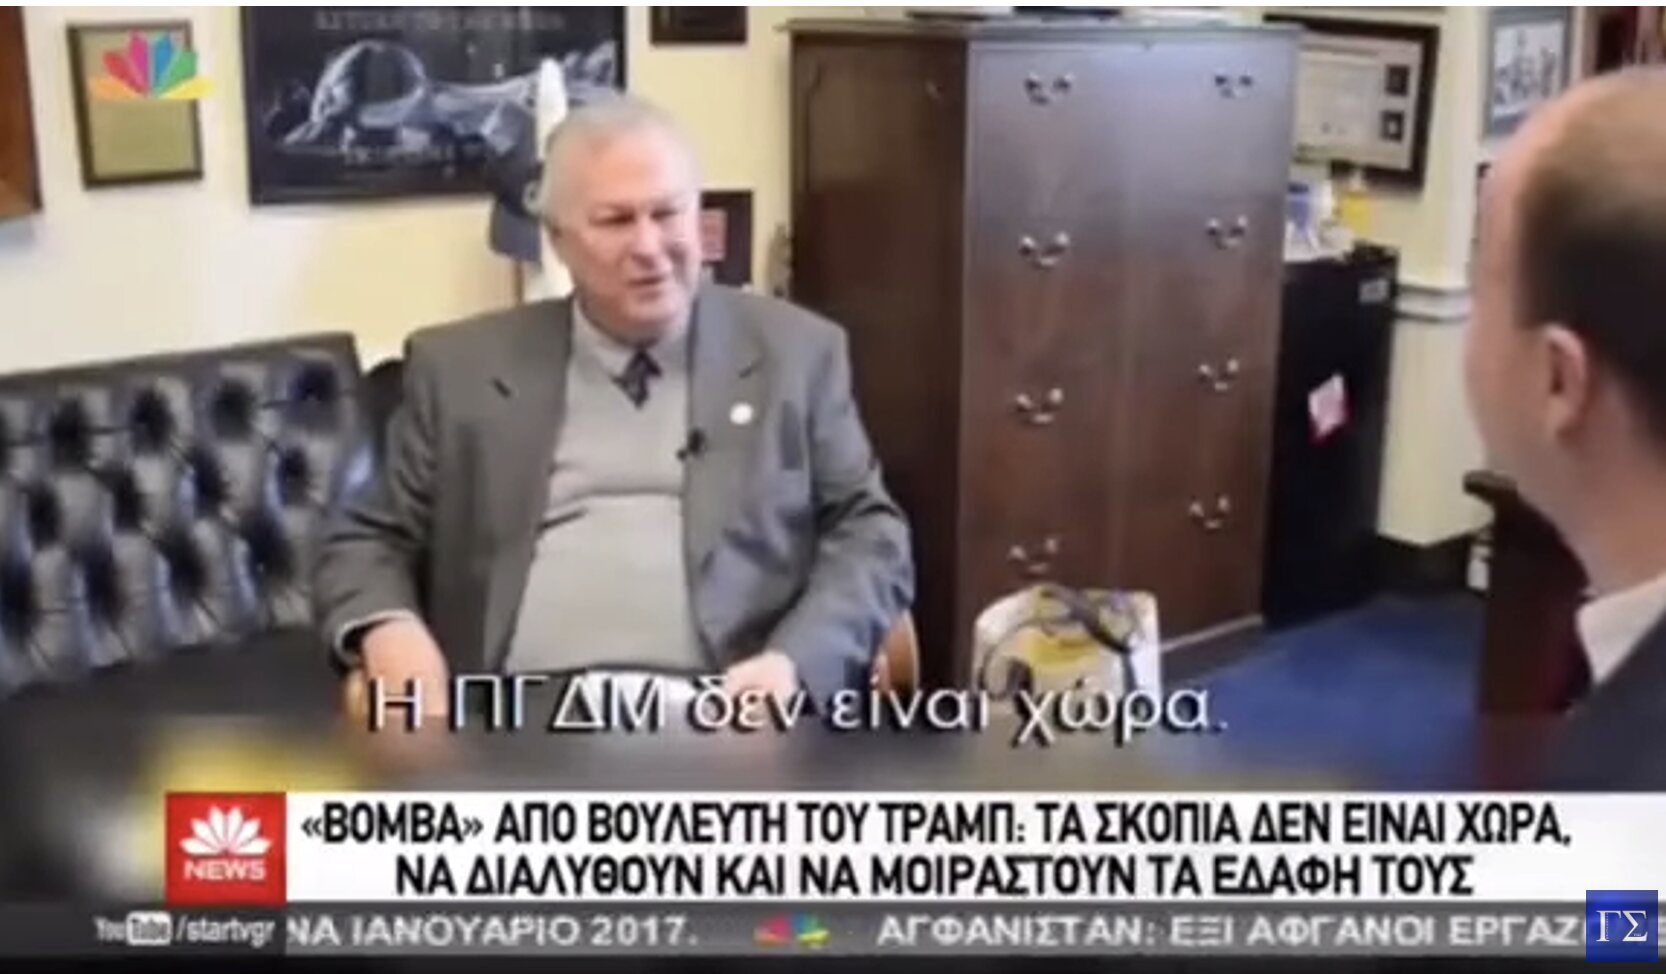 Τα Σκόπια πρέπει να διαλυθούν, δήλωσε Αμερικανός Βουλευτής Dana Rohrabacher